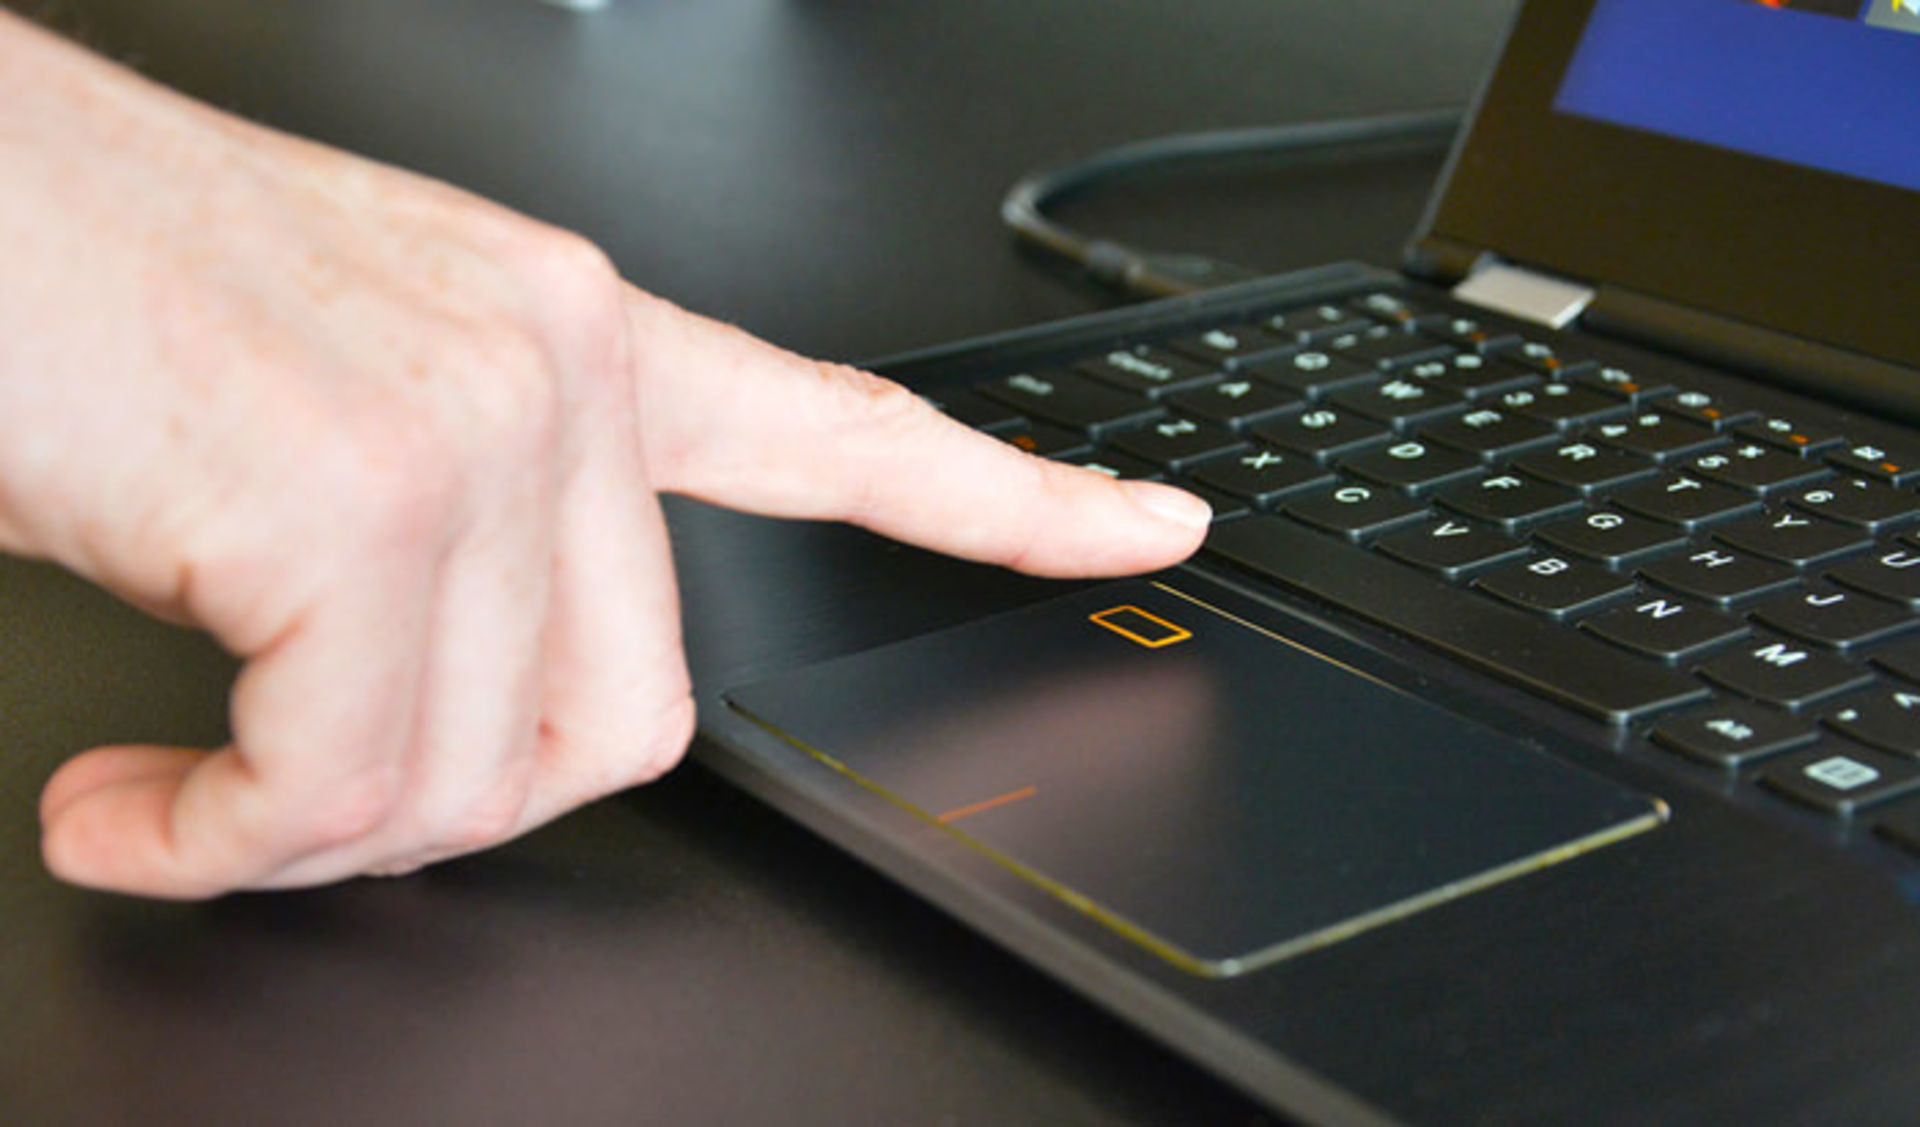 مرجع متخصصين ايران لپ تاپ مجهز به حسگر اثر انگشت